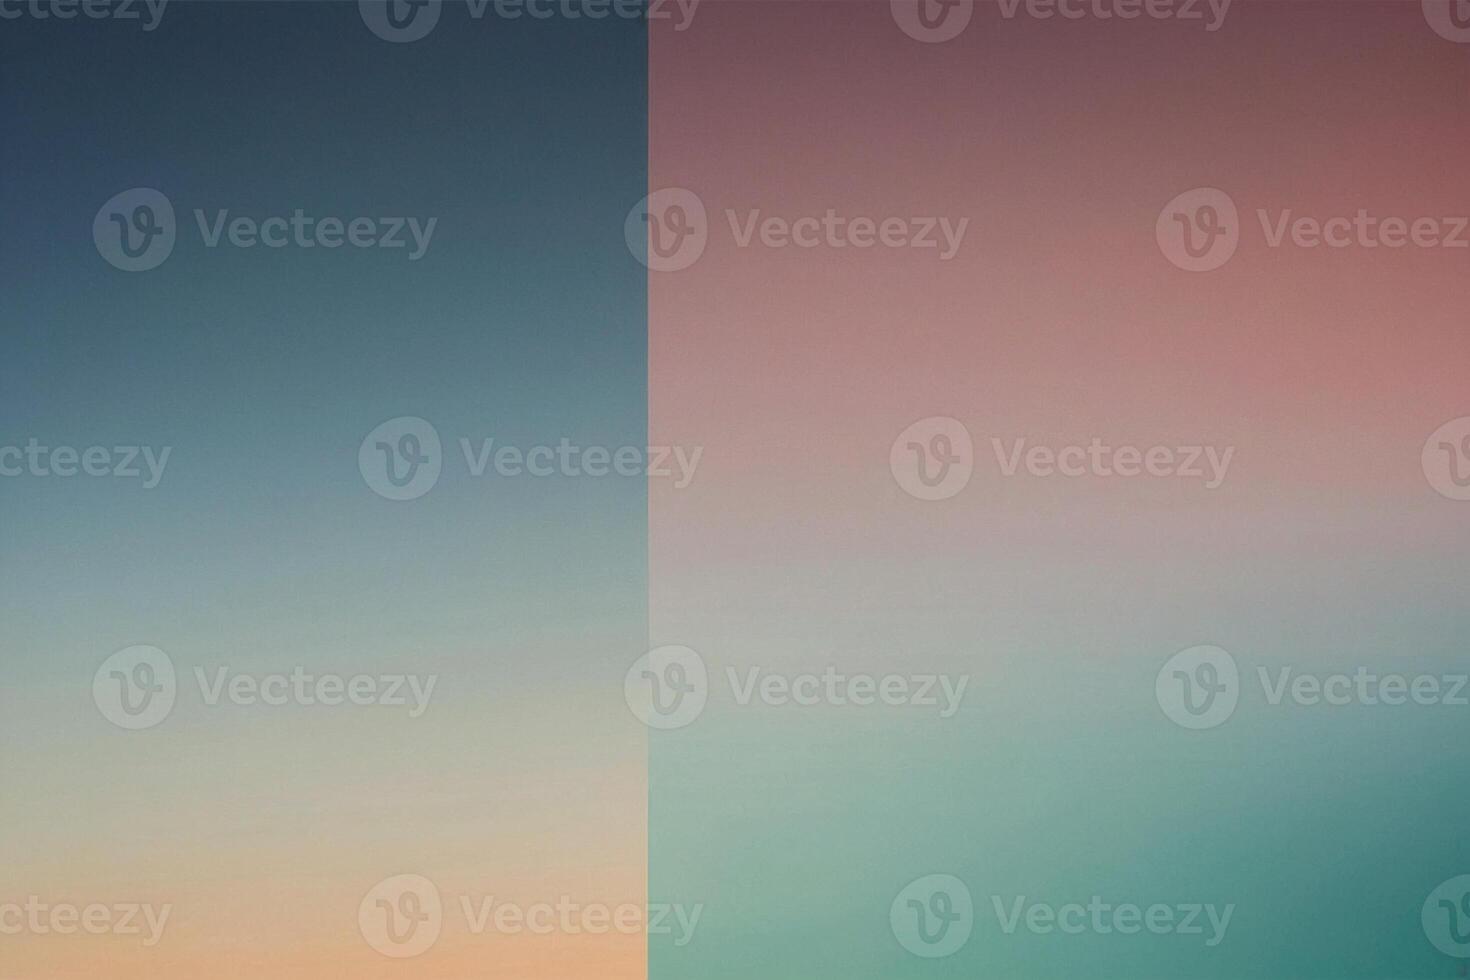 zwei anders farbig Blöcke von Farbe im das Himmel foto